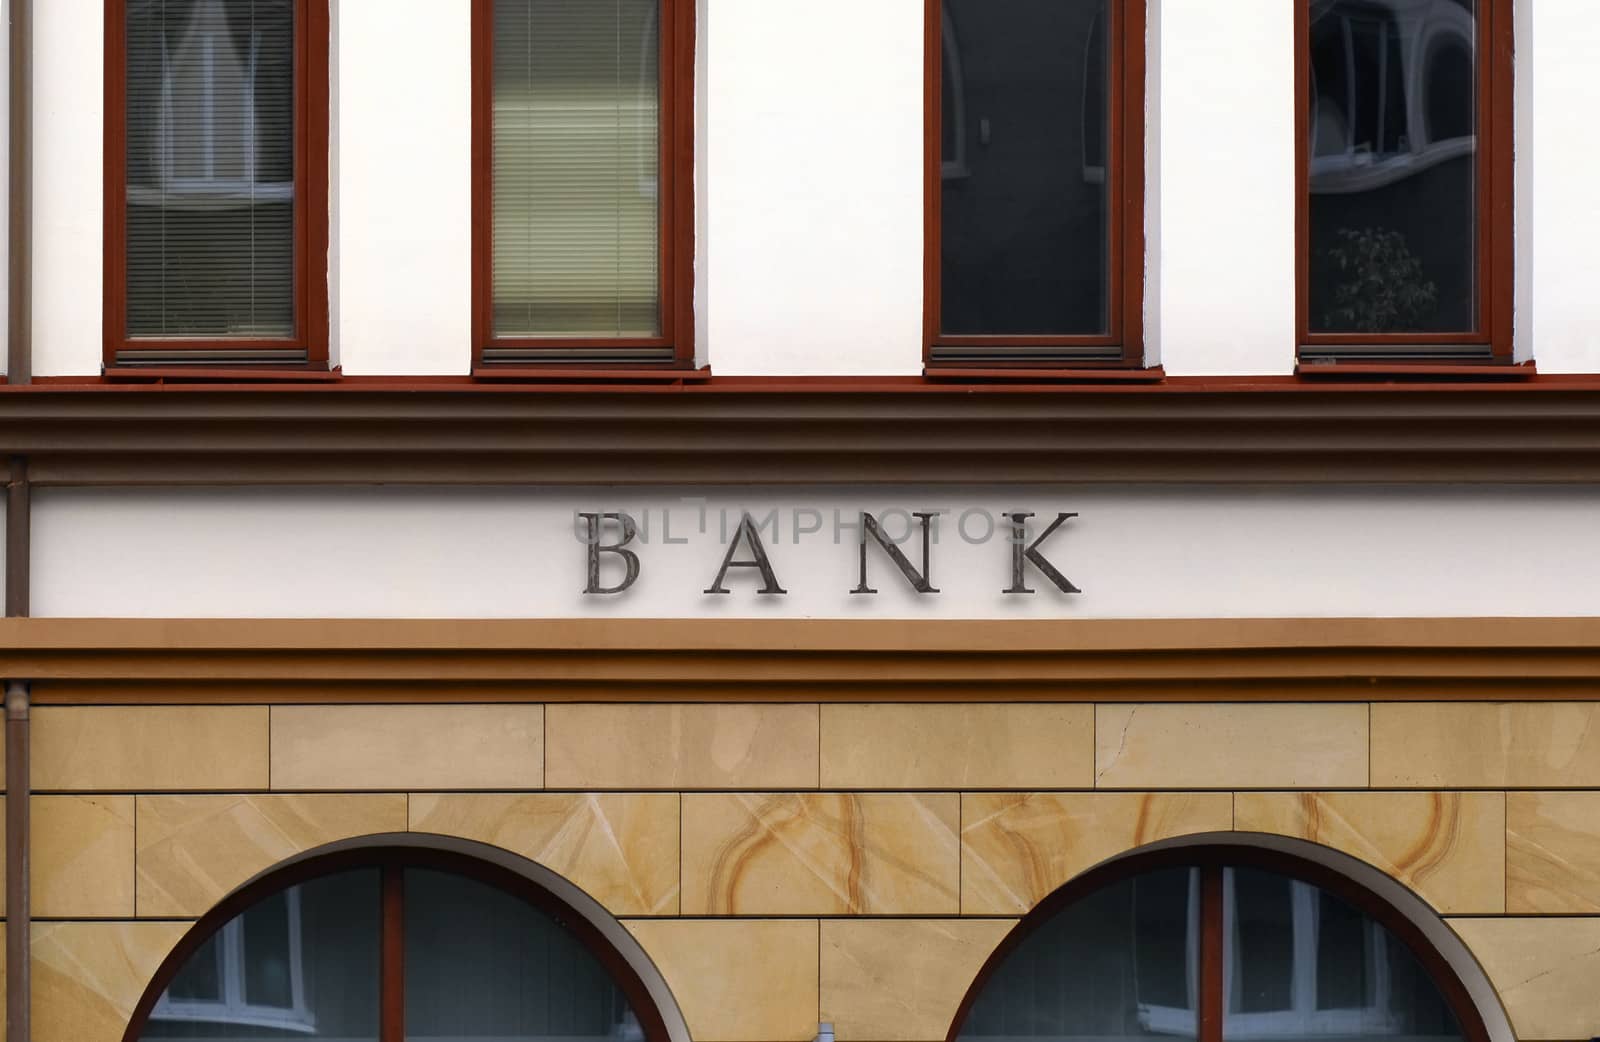 Small Bank facade by Vectorex